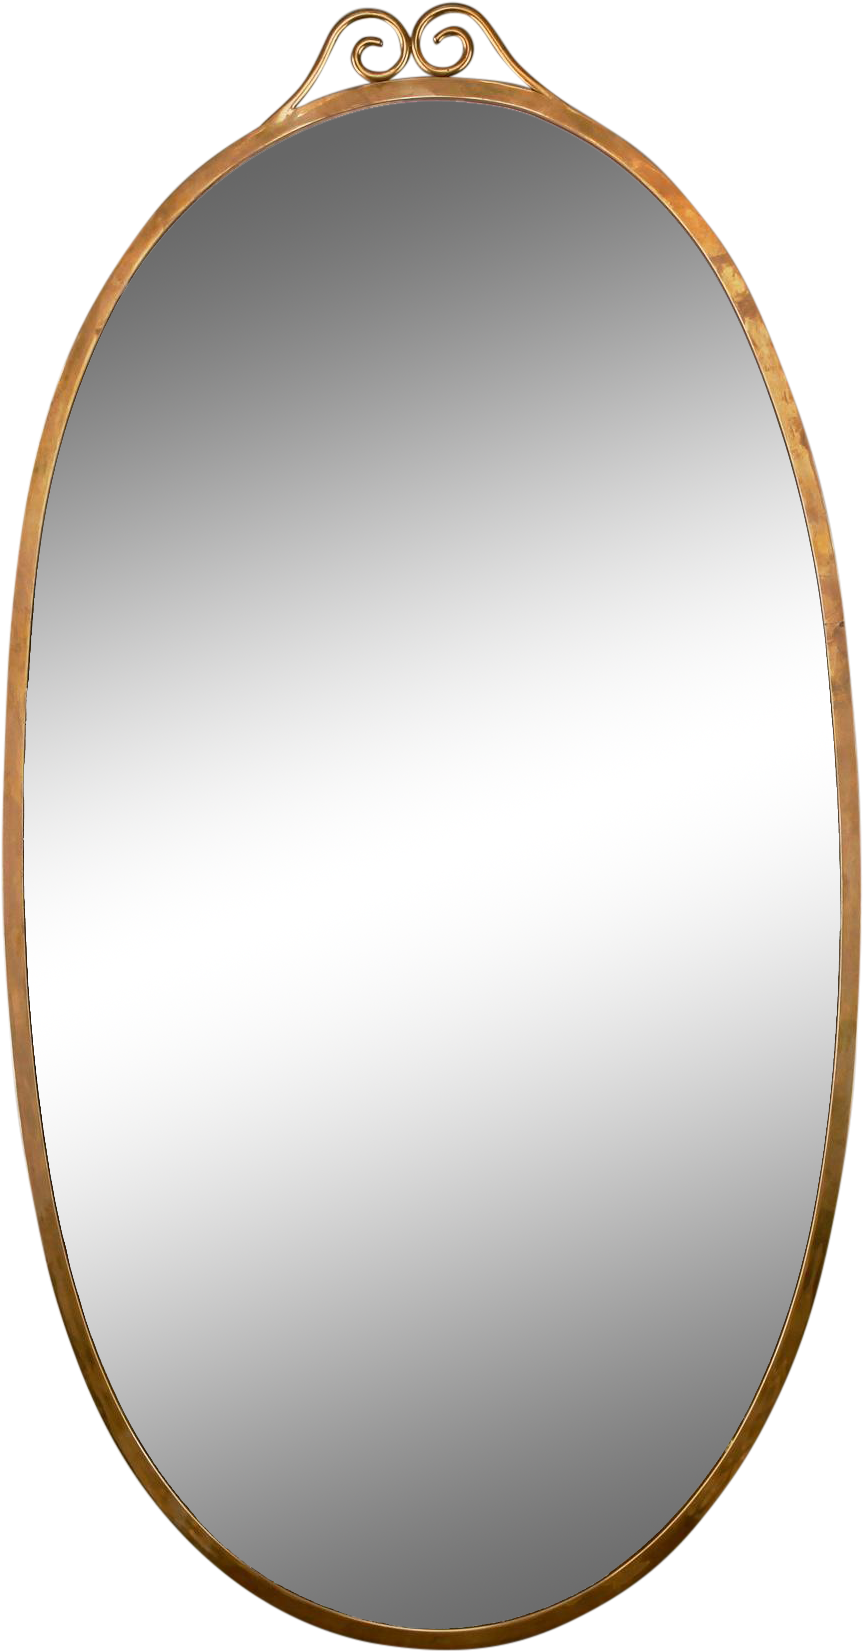 Elegant Oval Mirror Design